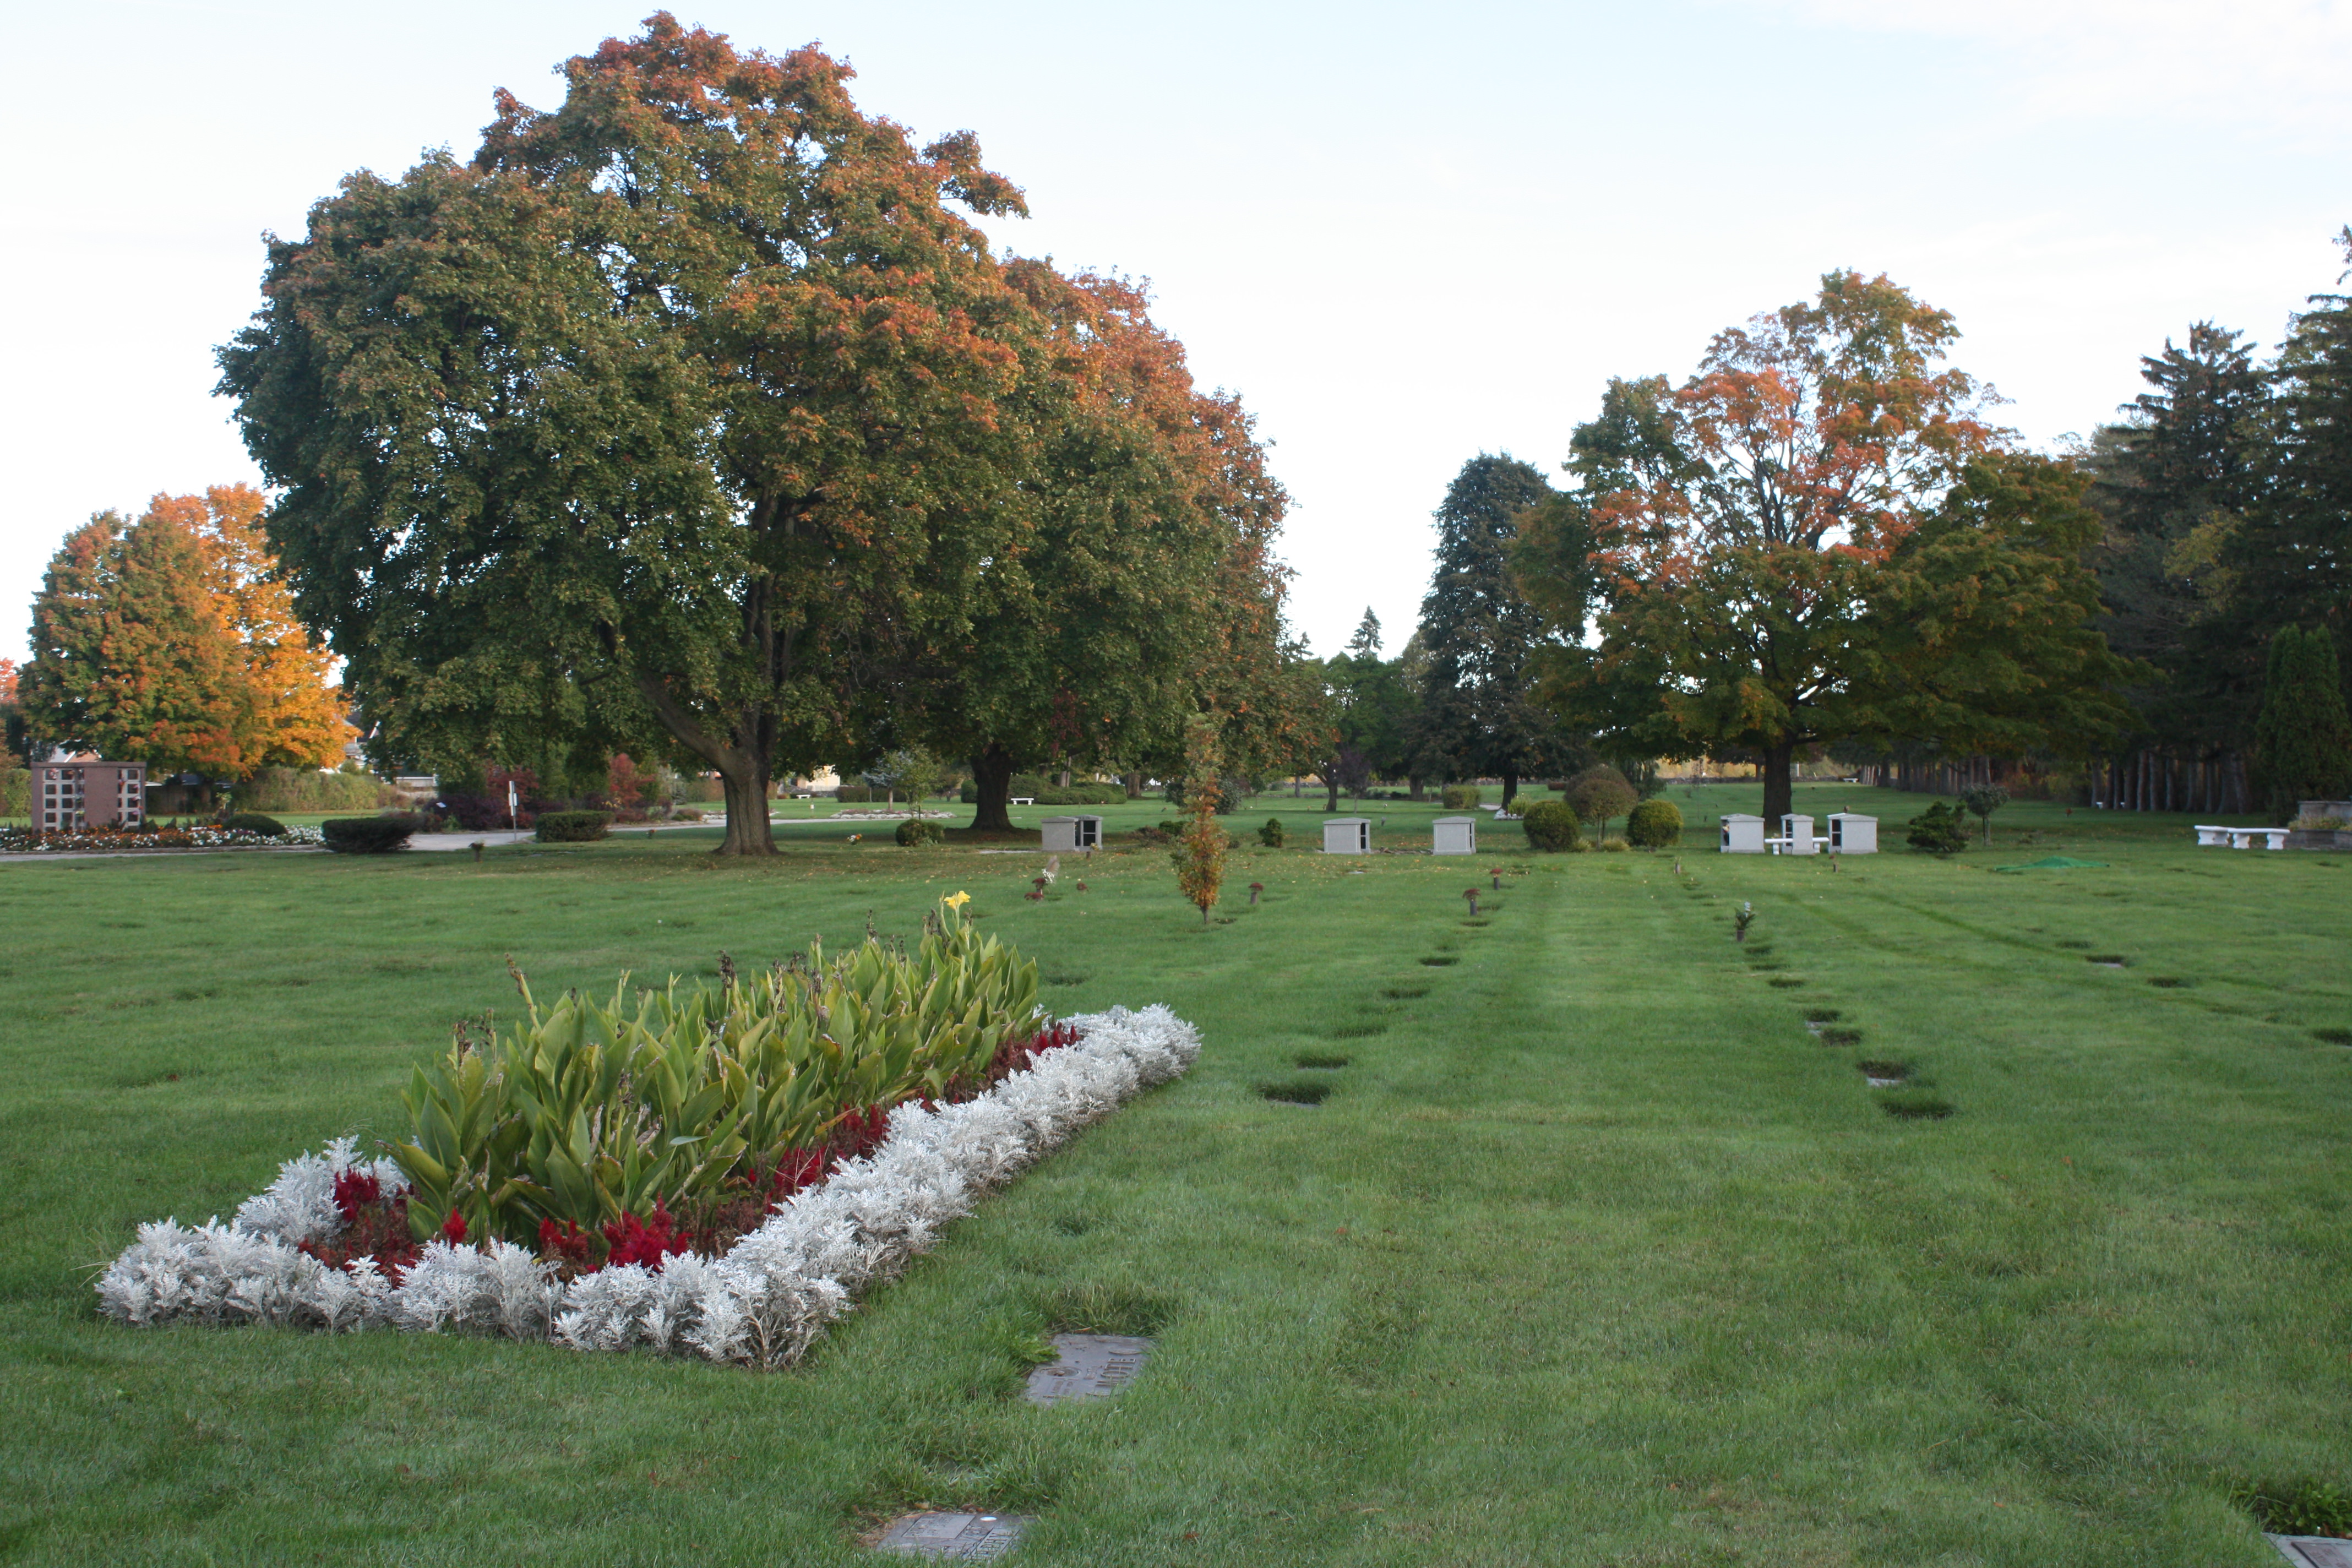 More fantastic green burial plots.